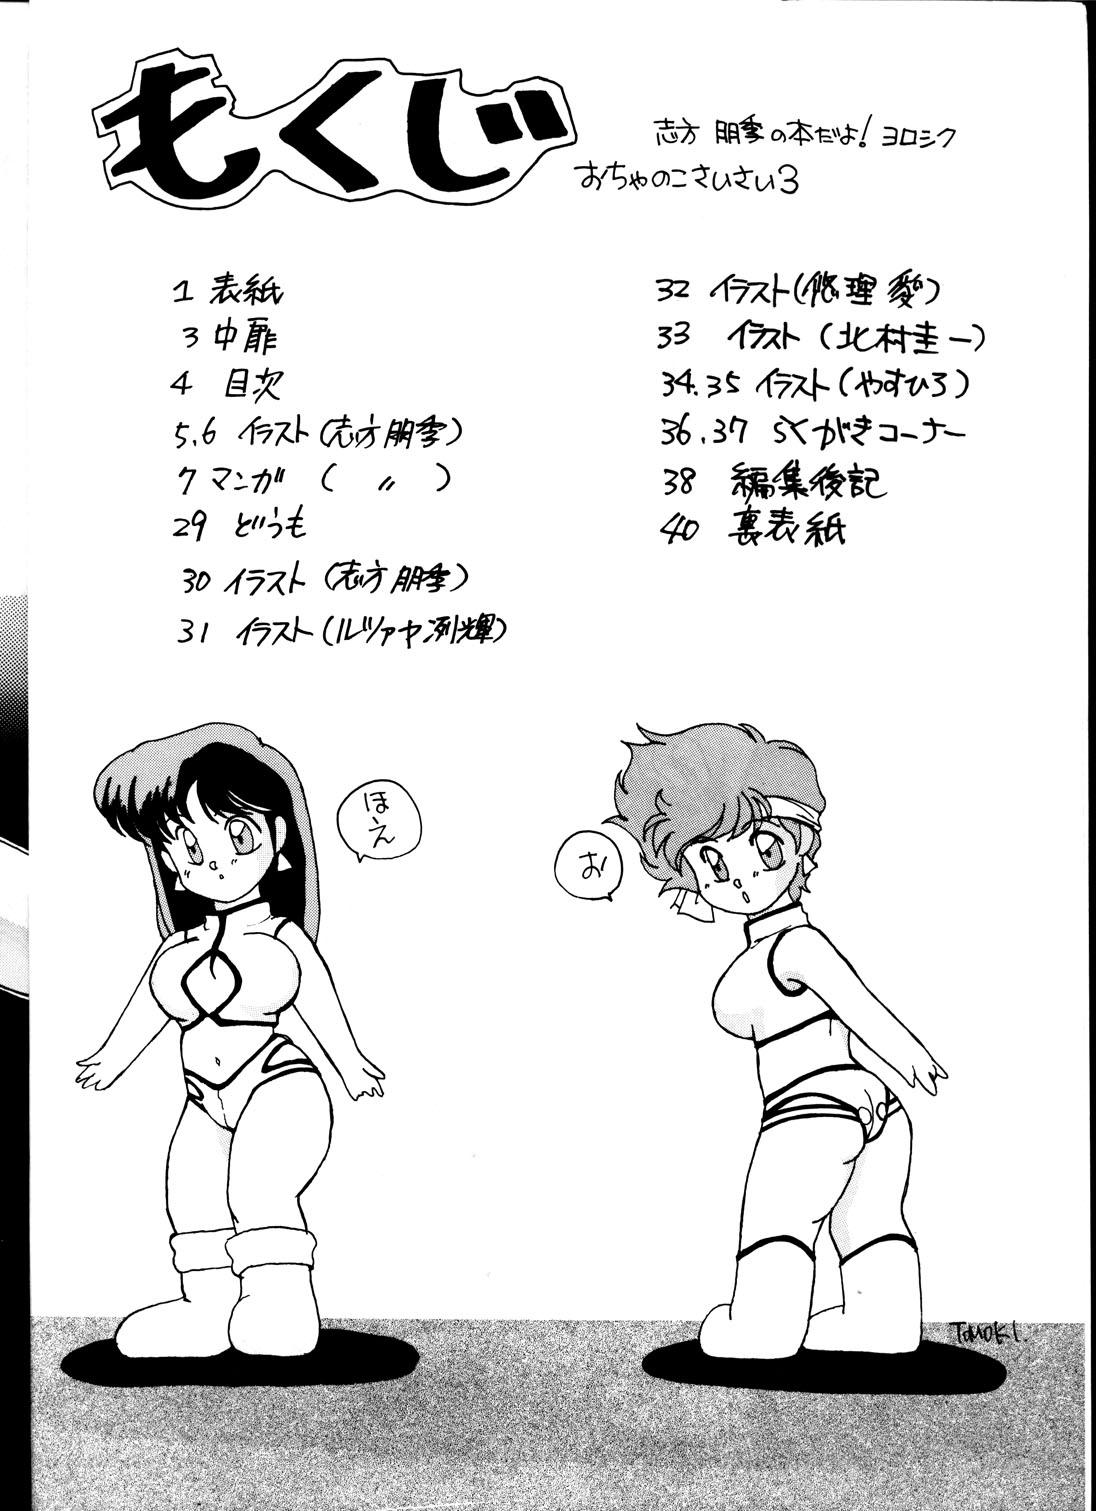 Lover Ocha no Ko Saisai 3 - Dirty pair Culona - Page 4